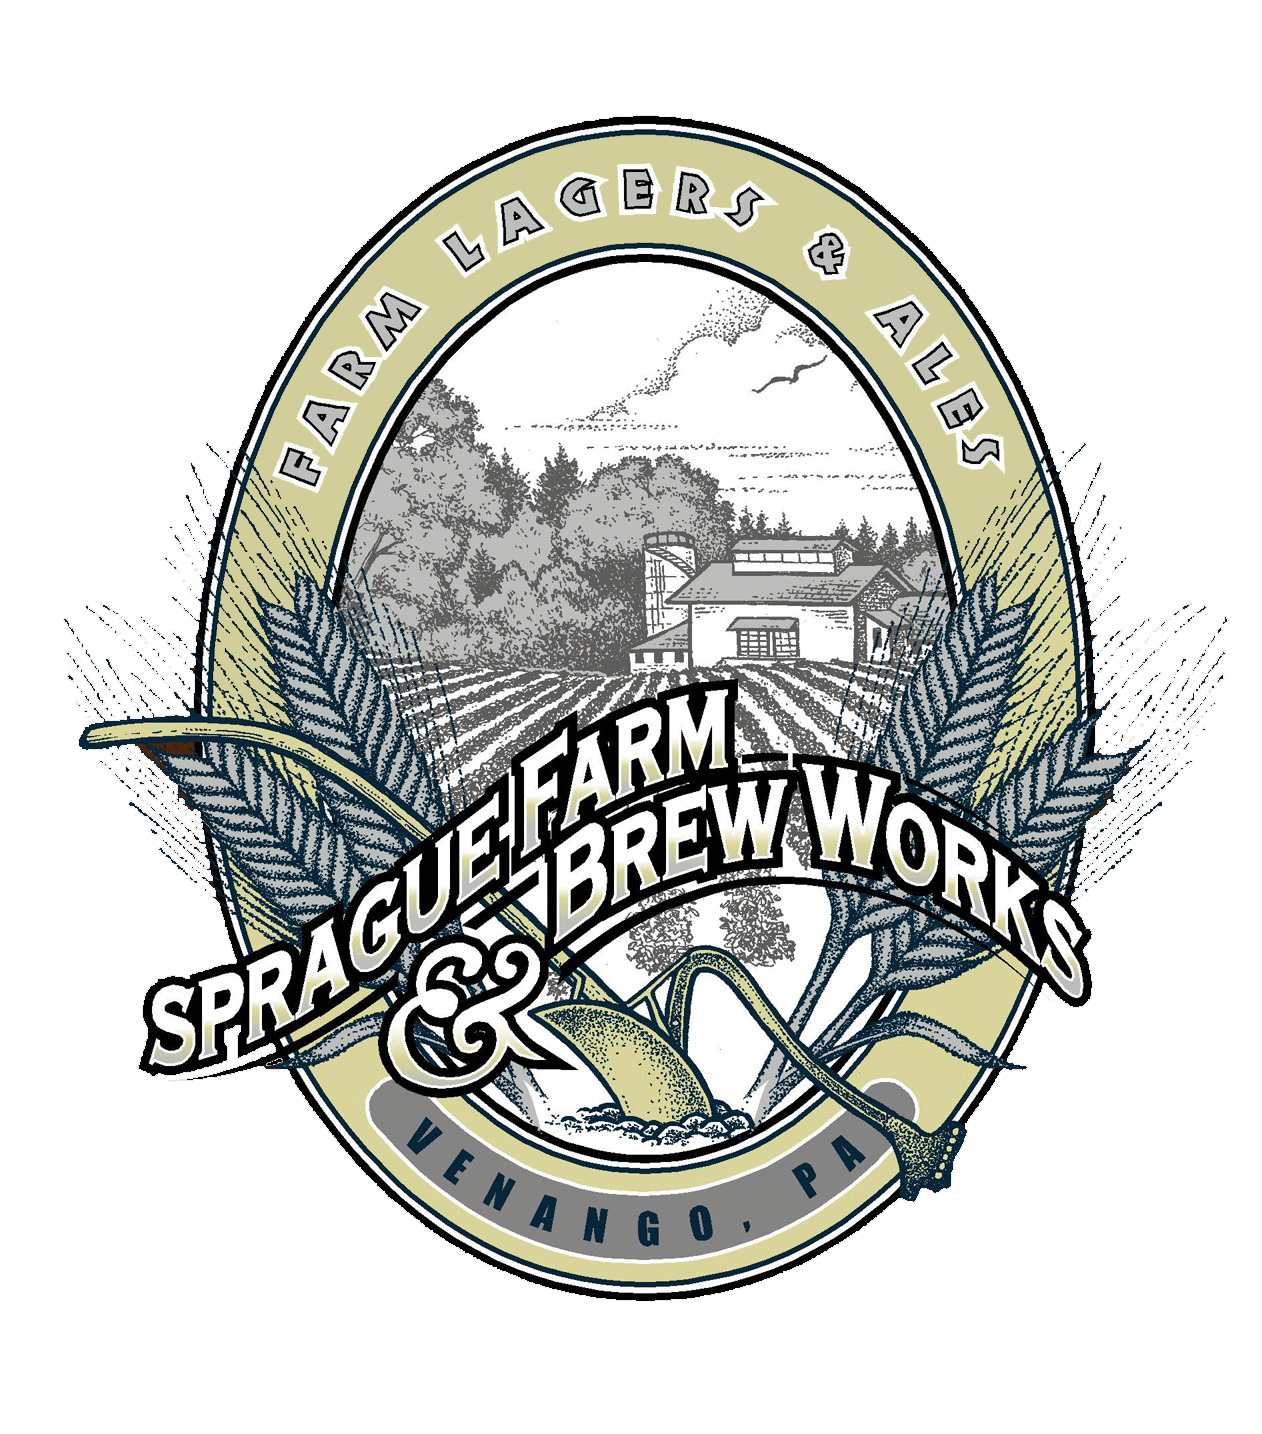 Sprague's Farm & Brew Works